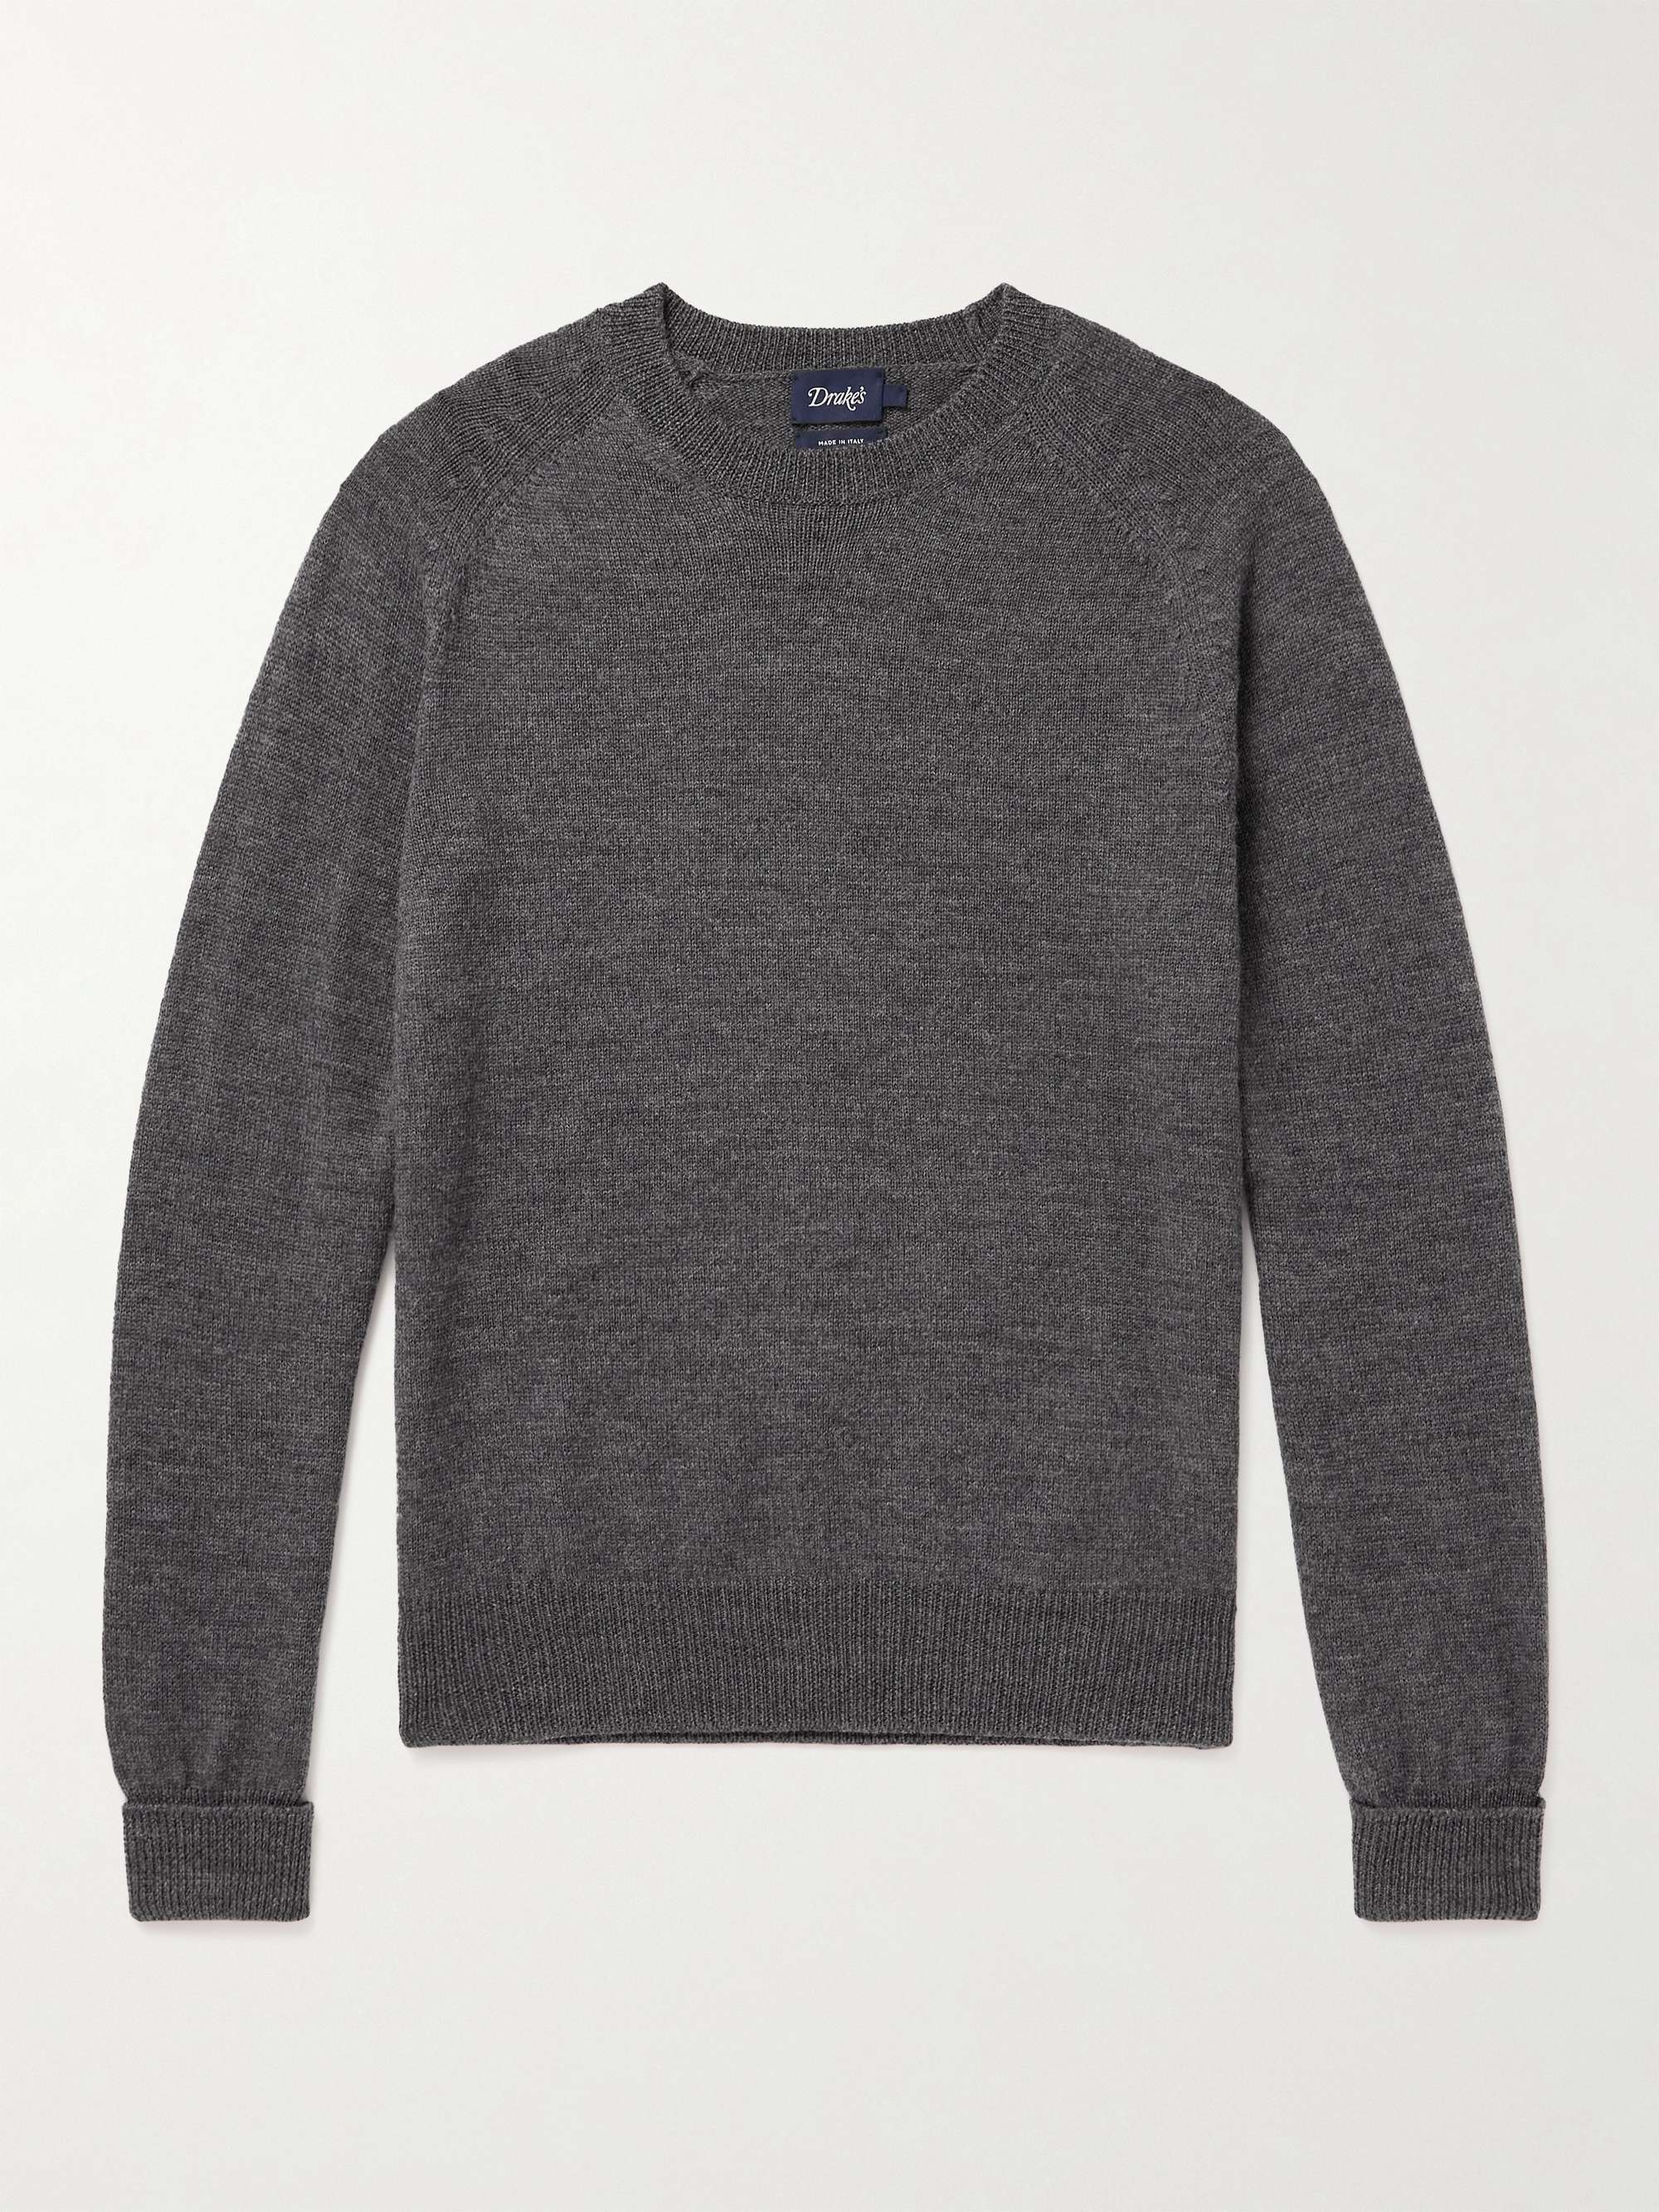 DRAKE'S Slim-Fit Mélange Merino Wool Sweater